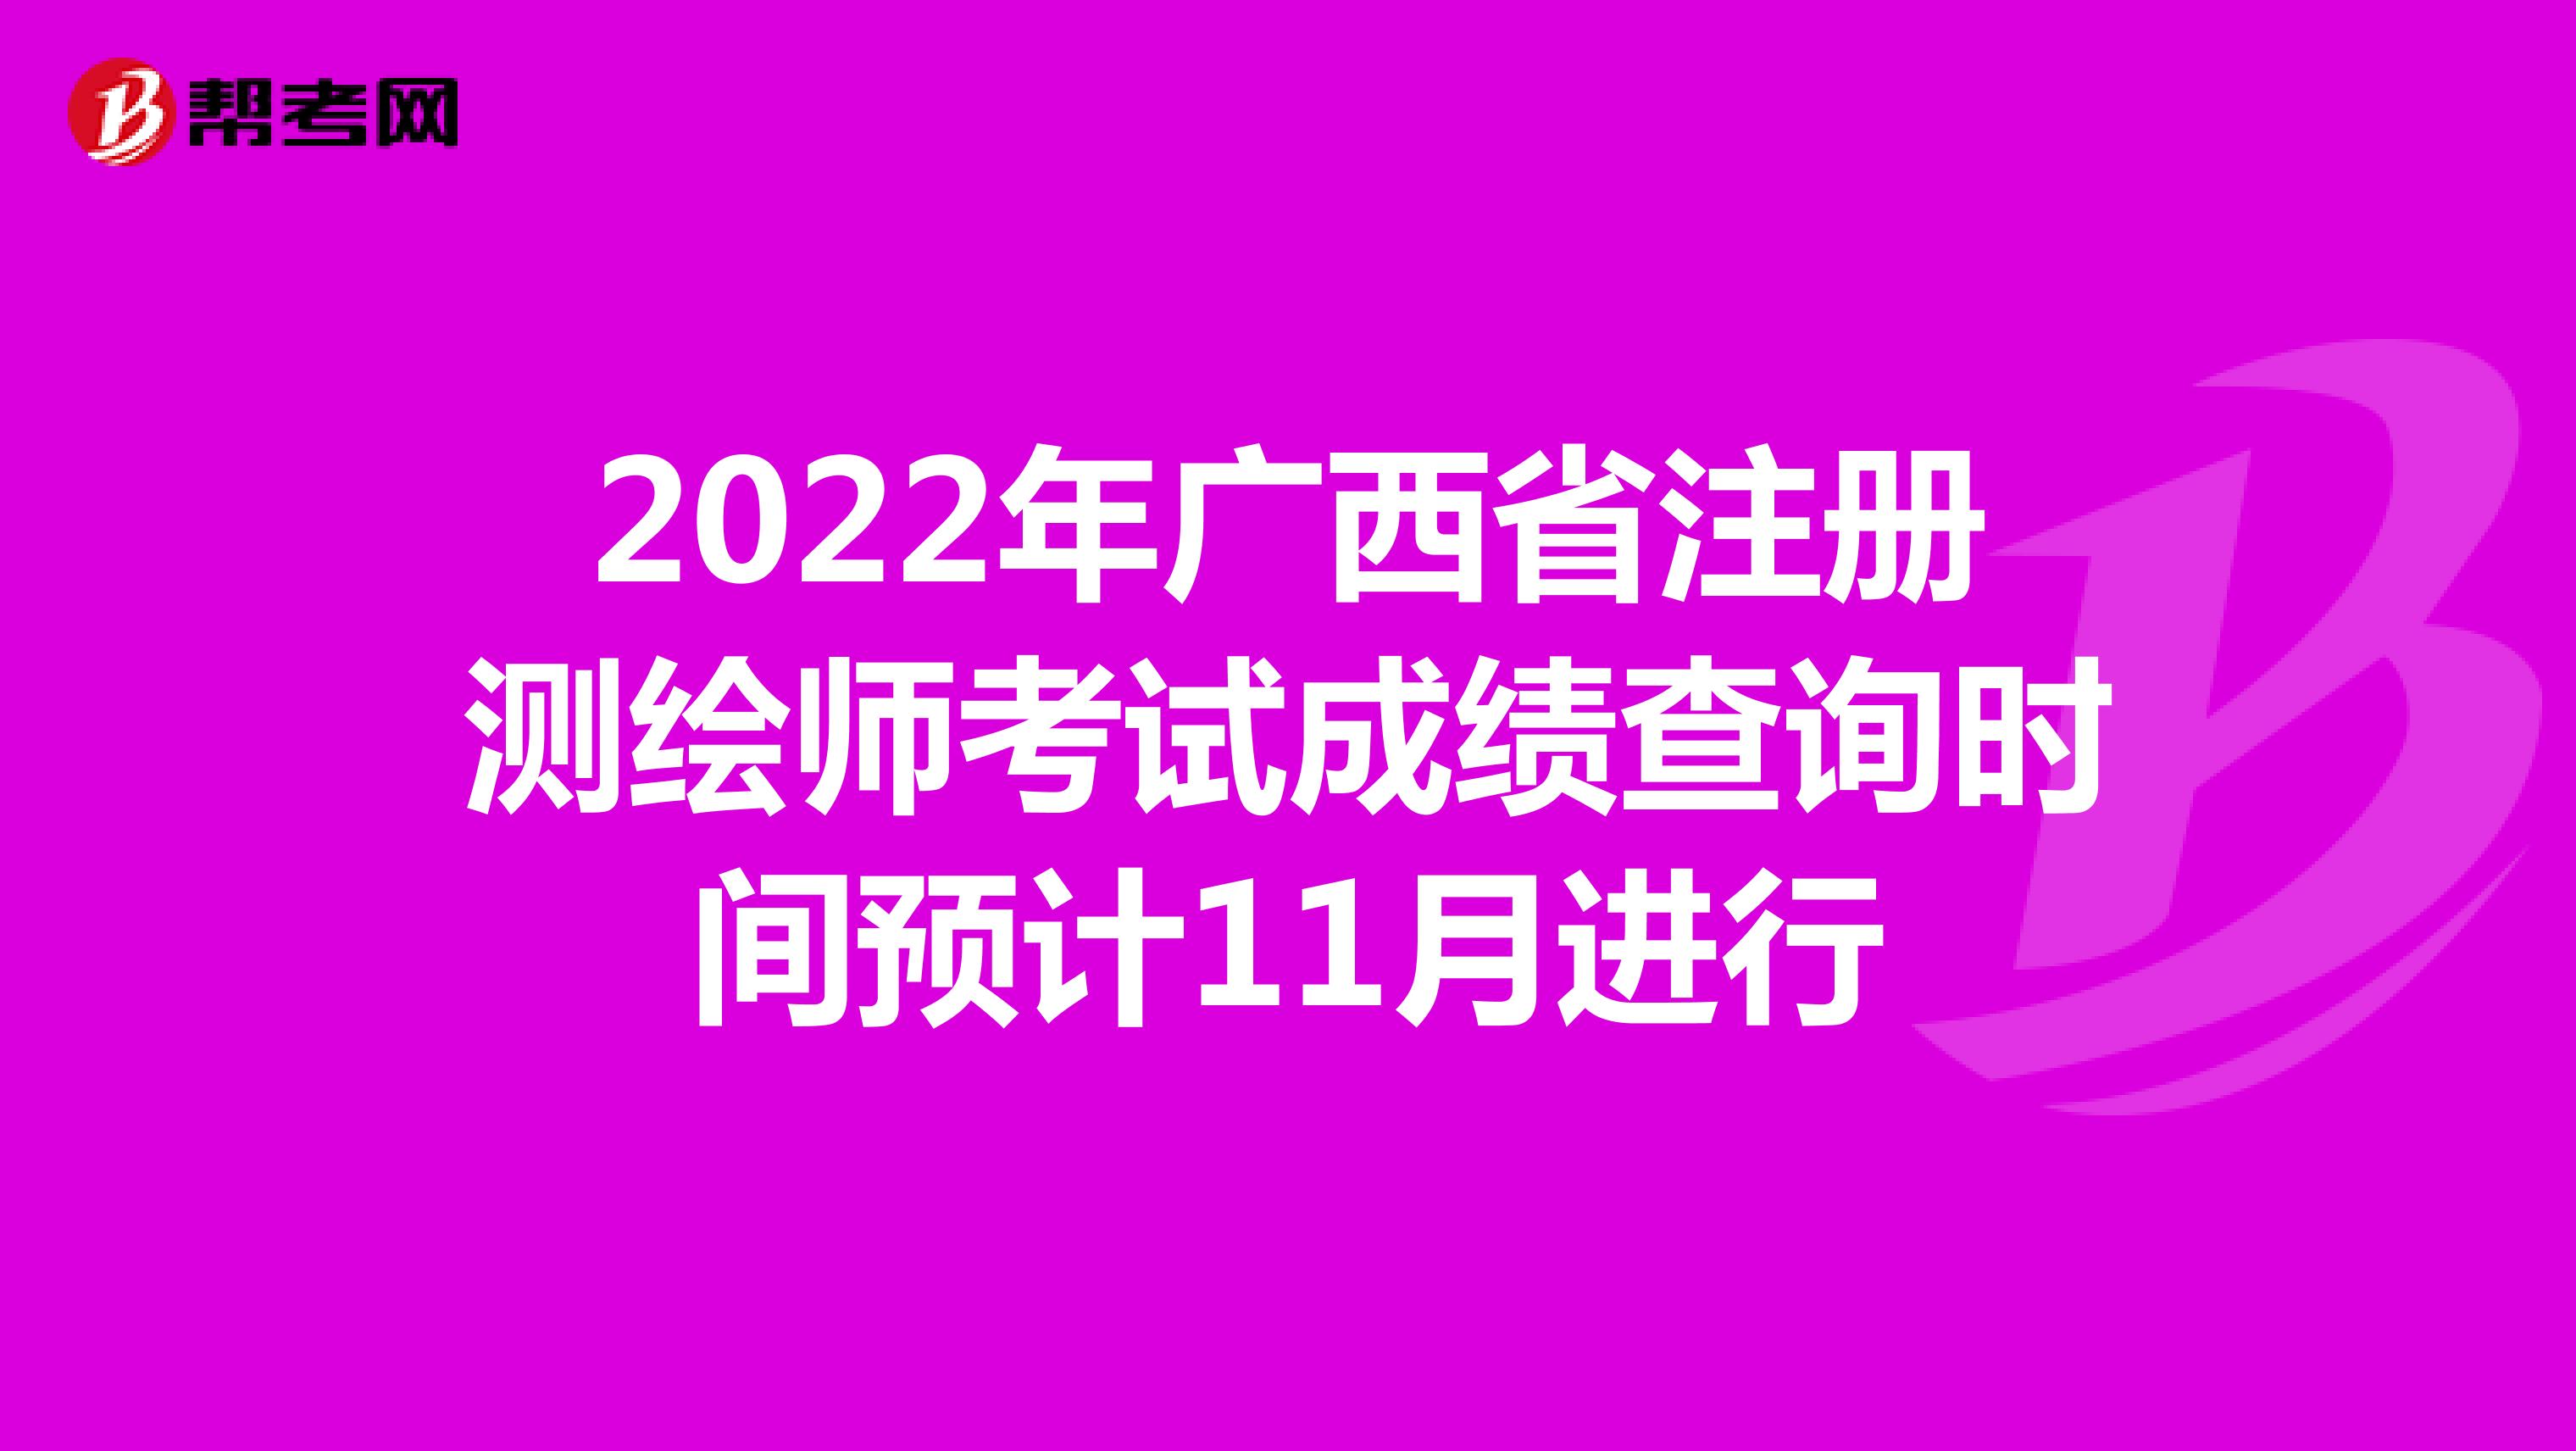 2022年广西省注册测绘师考试成绩查询时间预计11月进行